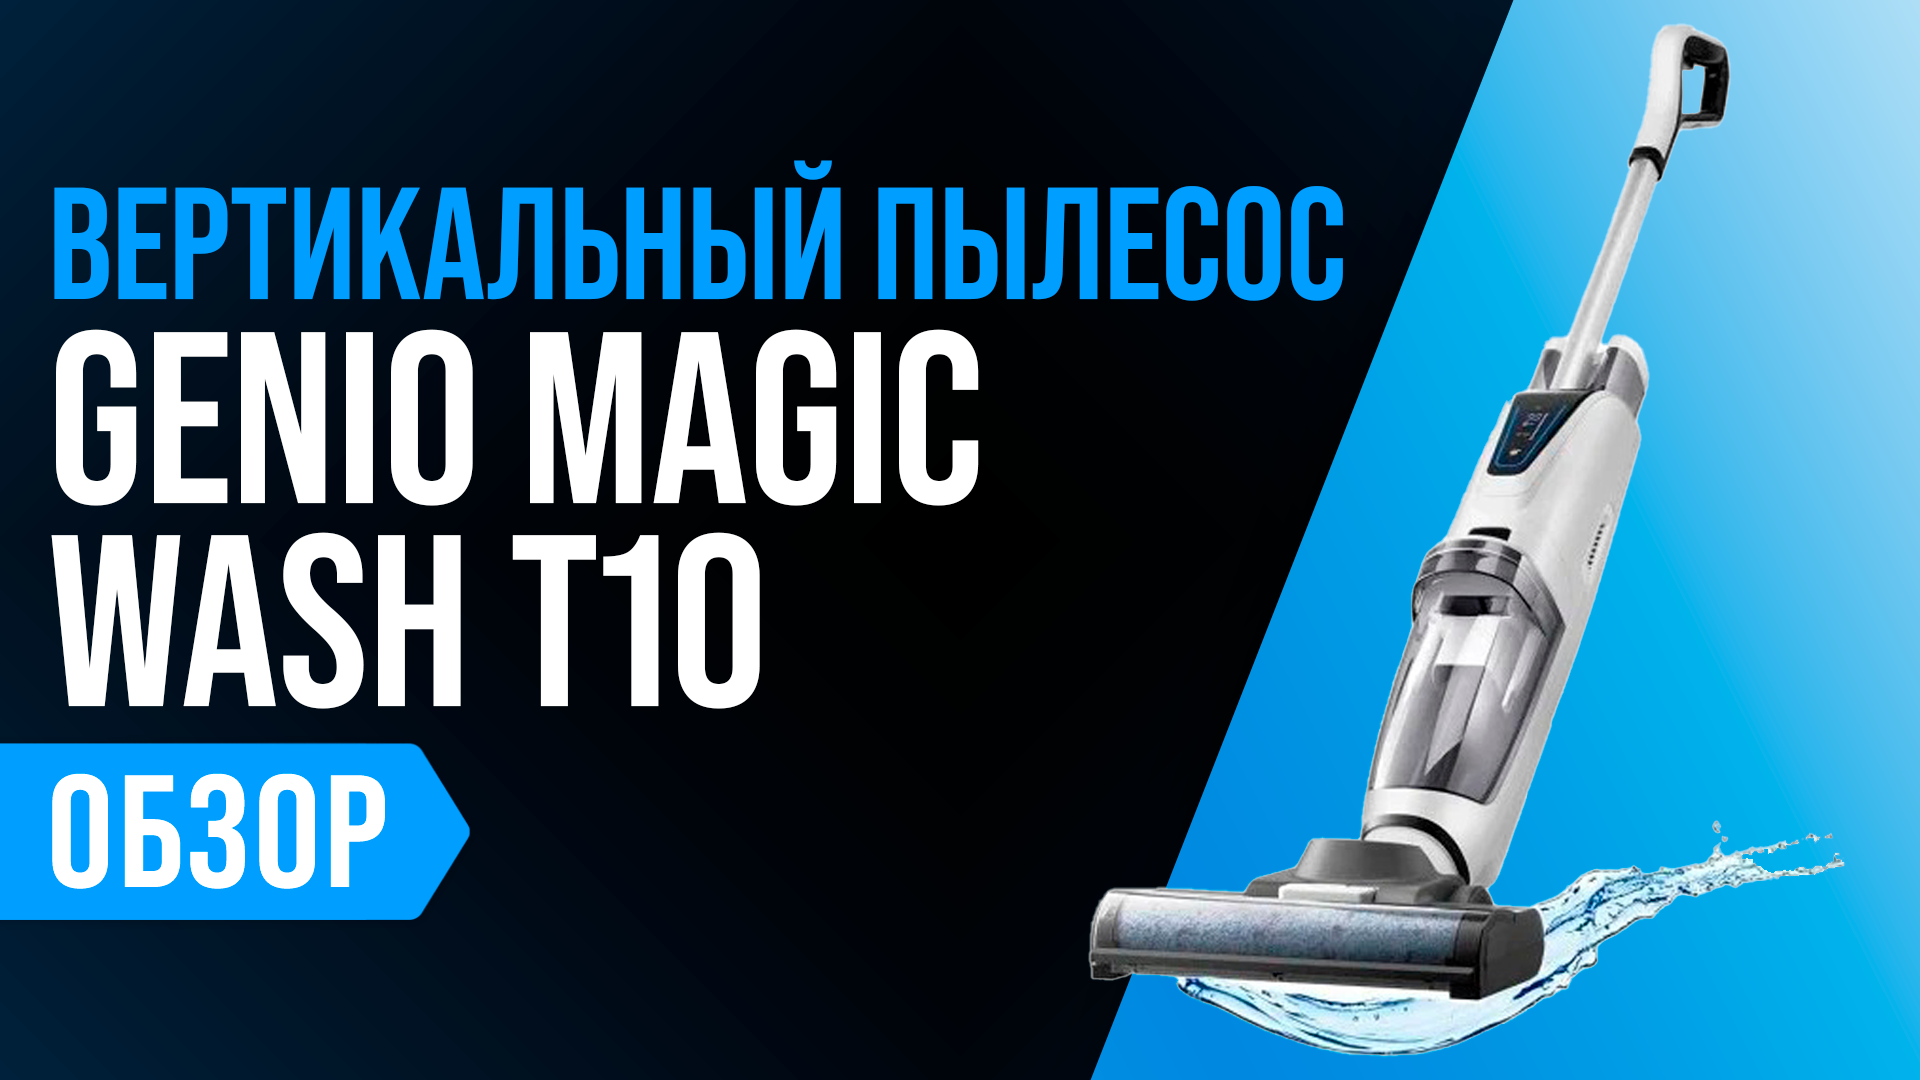 Genio magic. Пылесос Genio Magic Wash t10. Genio Magic Wash t10 Pro. Genio Magic Wash t10 характеристики. Genio Magic Wash t10 перезагрузка.